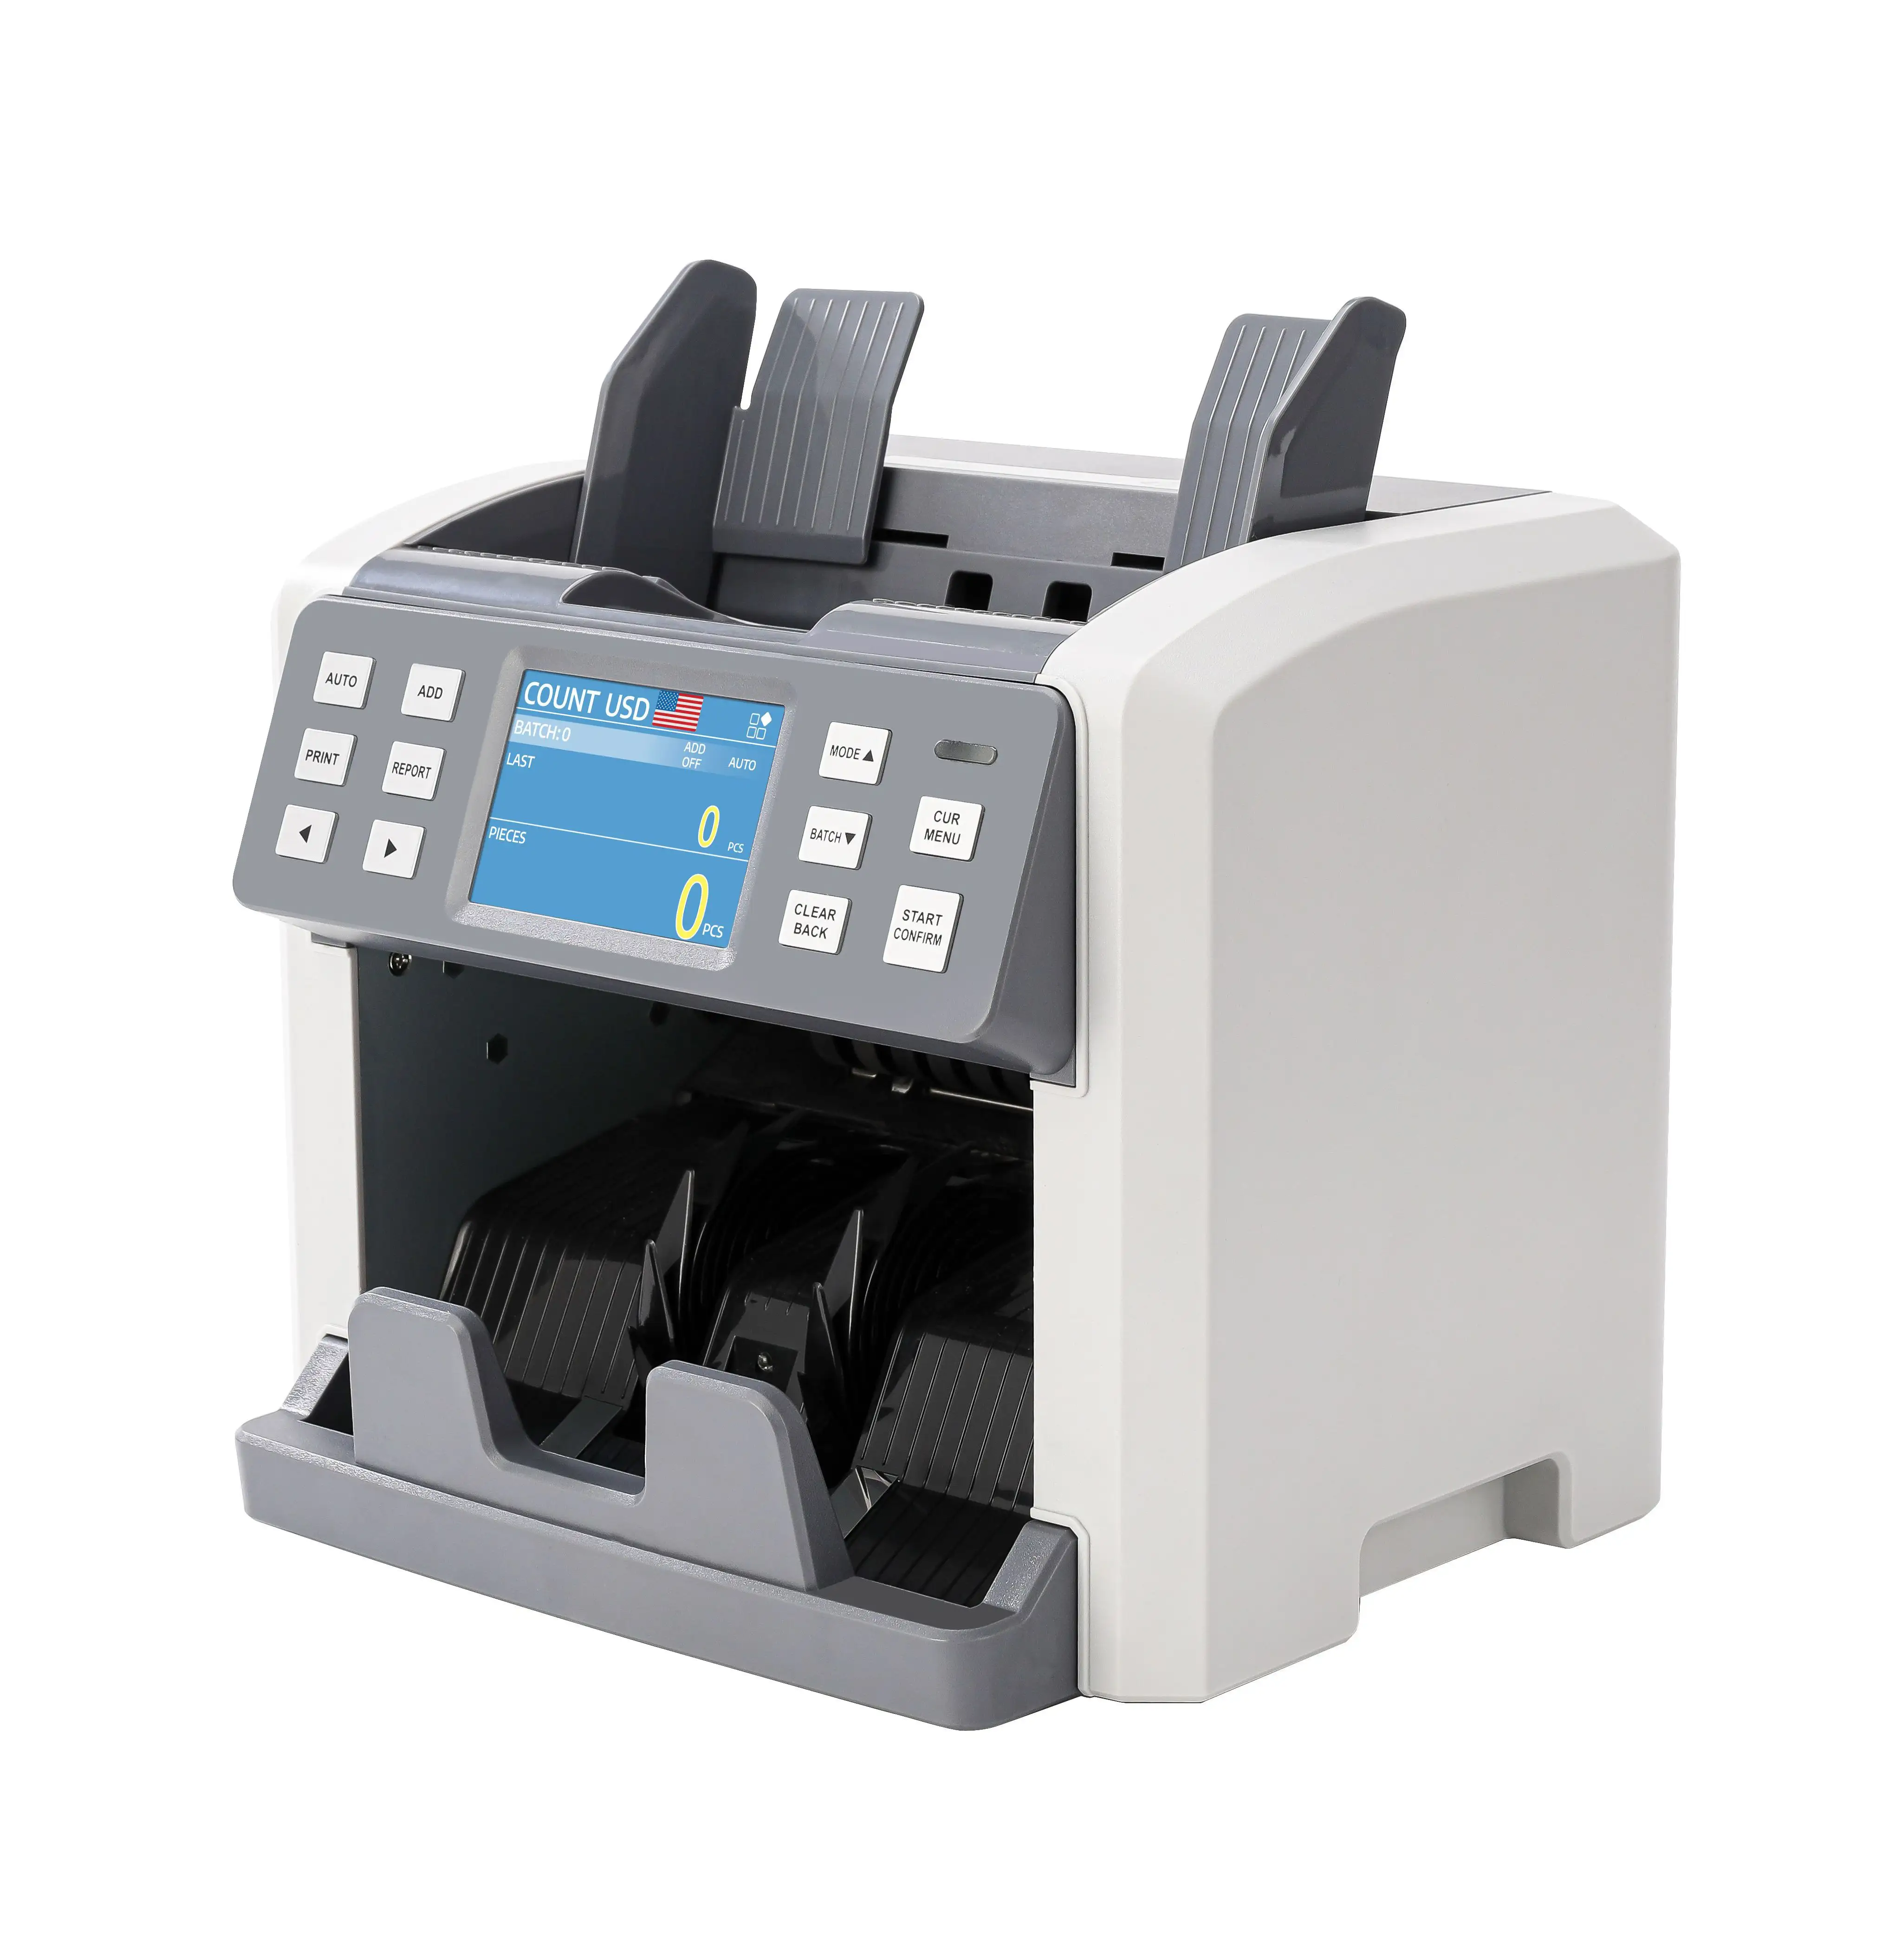 P120 frontloading bancone banconote/macchina di conteggio ad alta tecnologia/rilevazione di note con doppio CIS UV MG IR